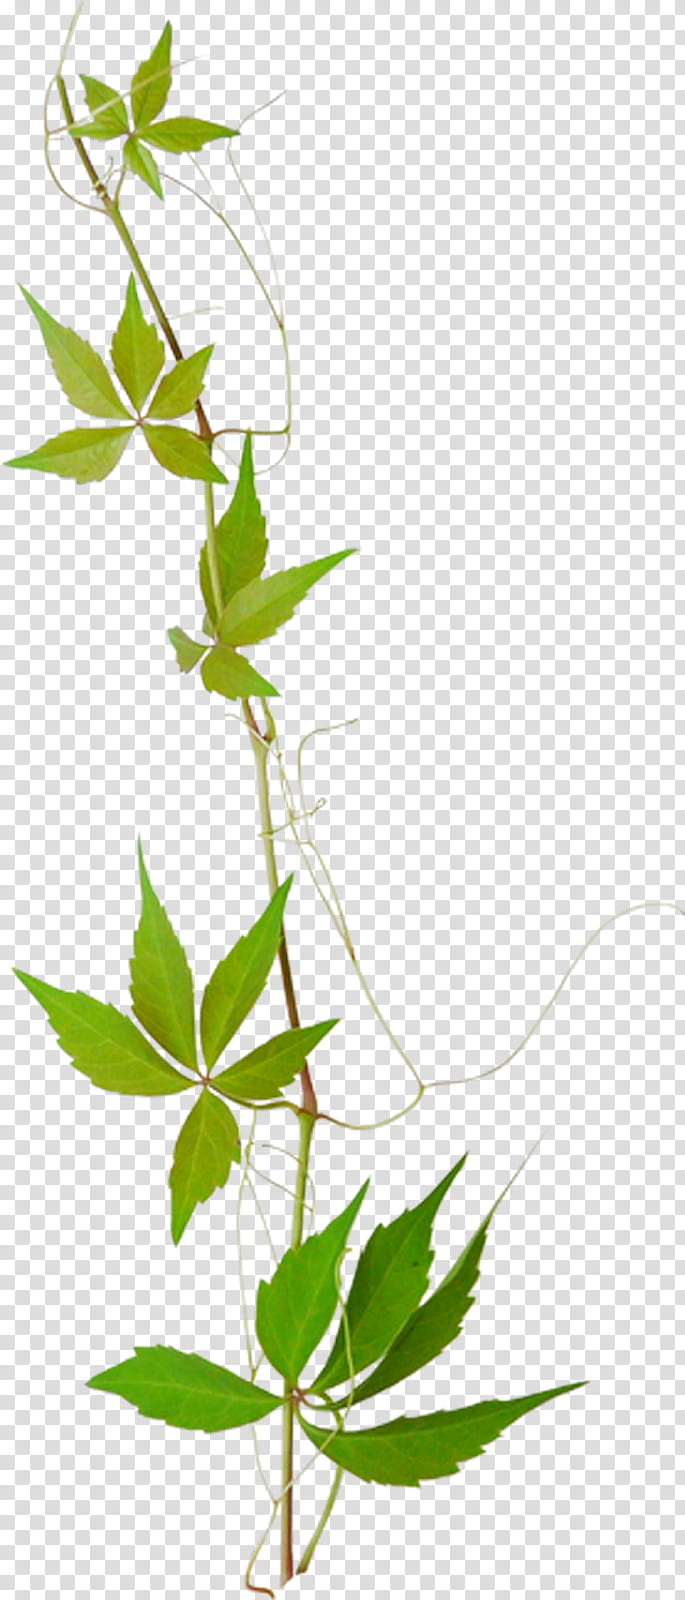 Green Leaf, Branch, Twig, Follaje, Plant Stem, Flower, Herbal, Plane transparent background PNG clipart